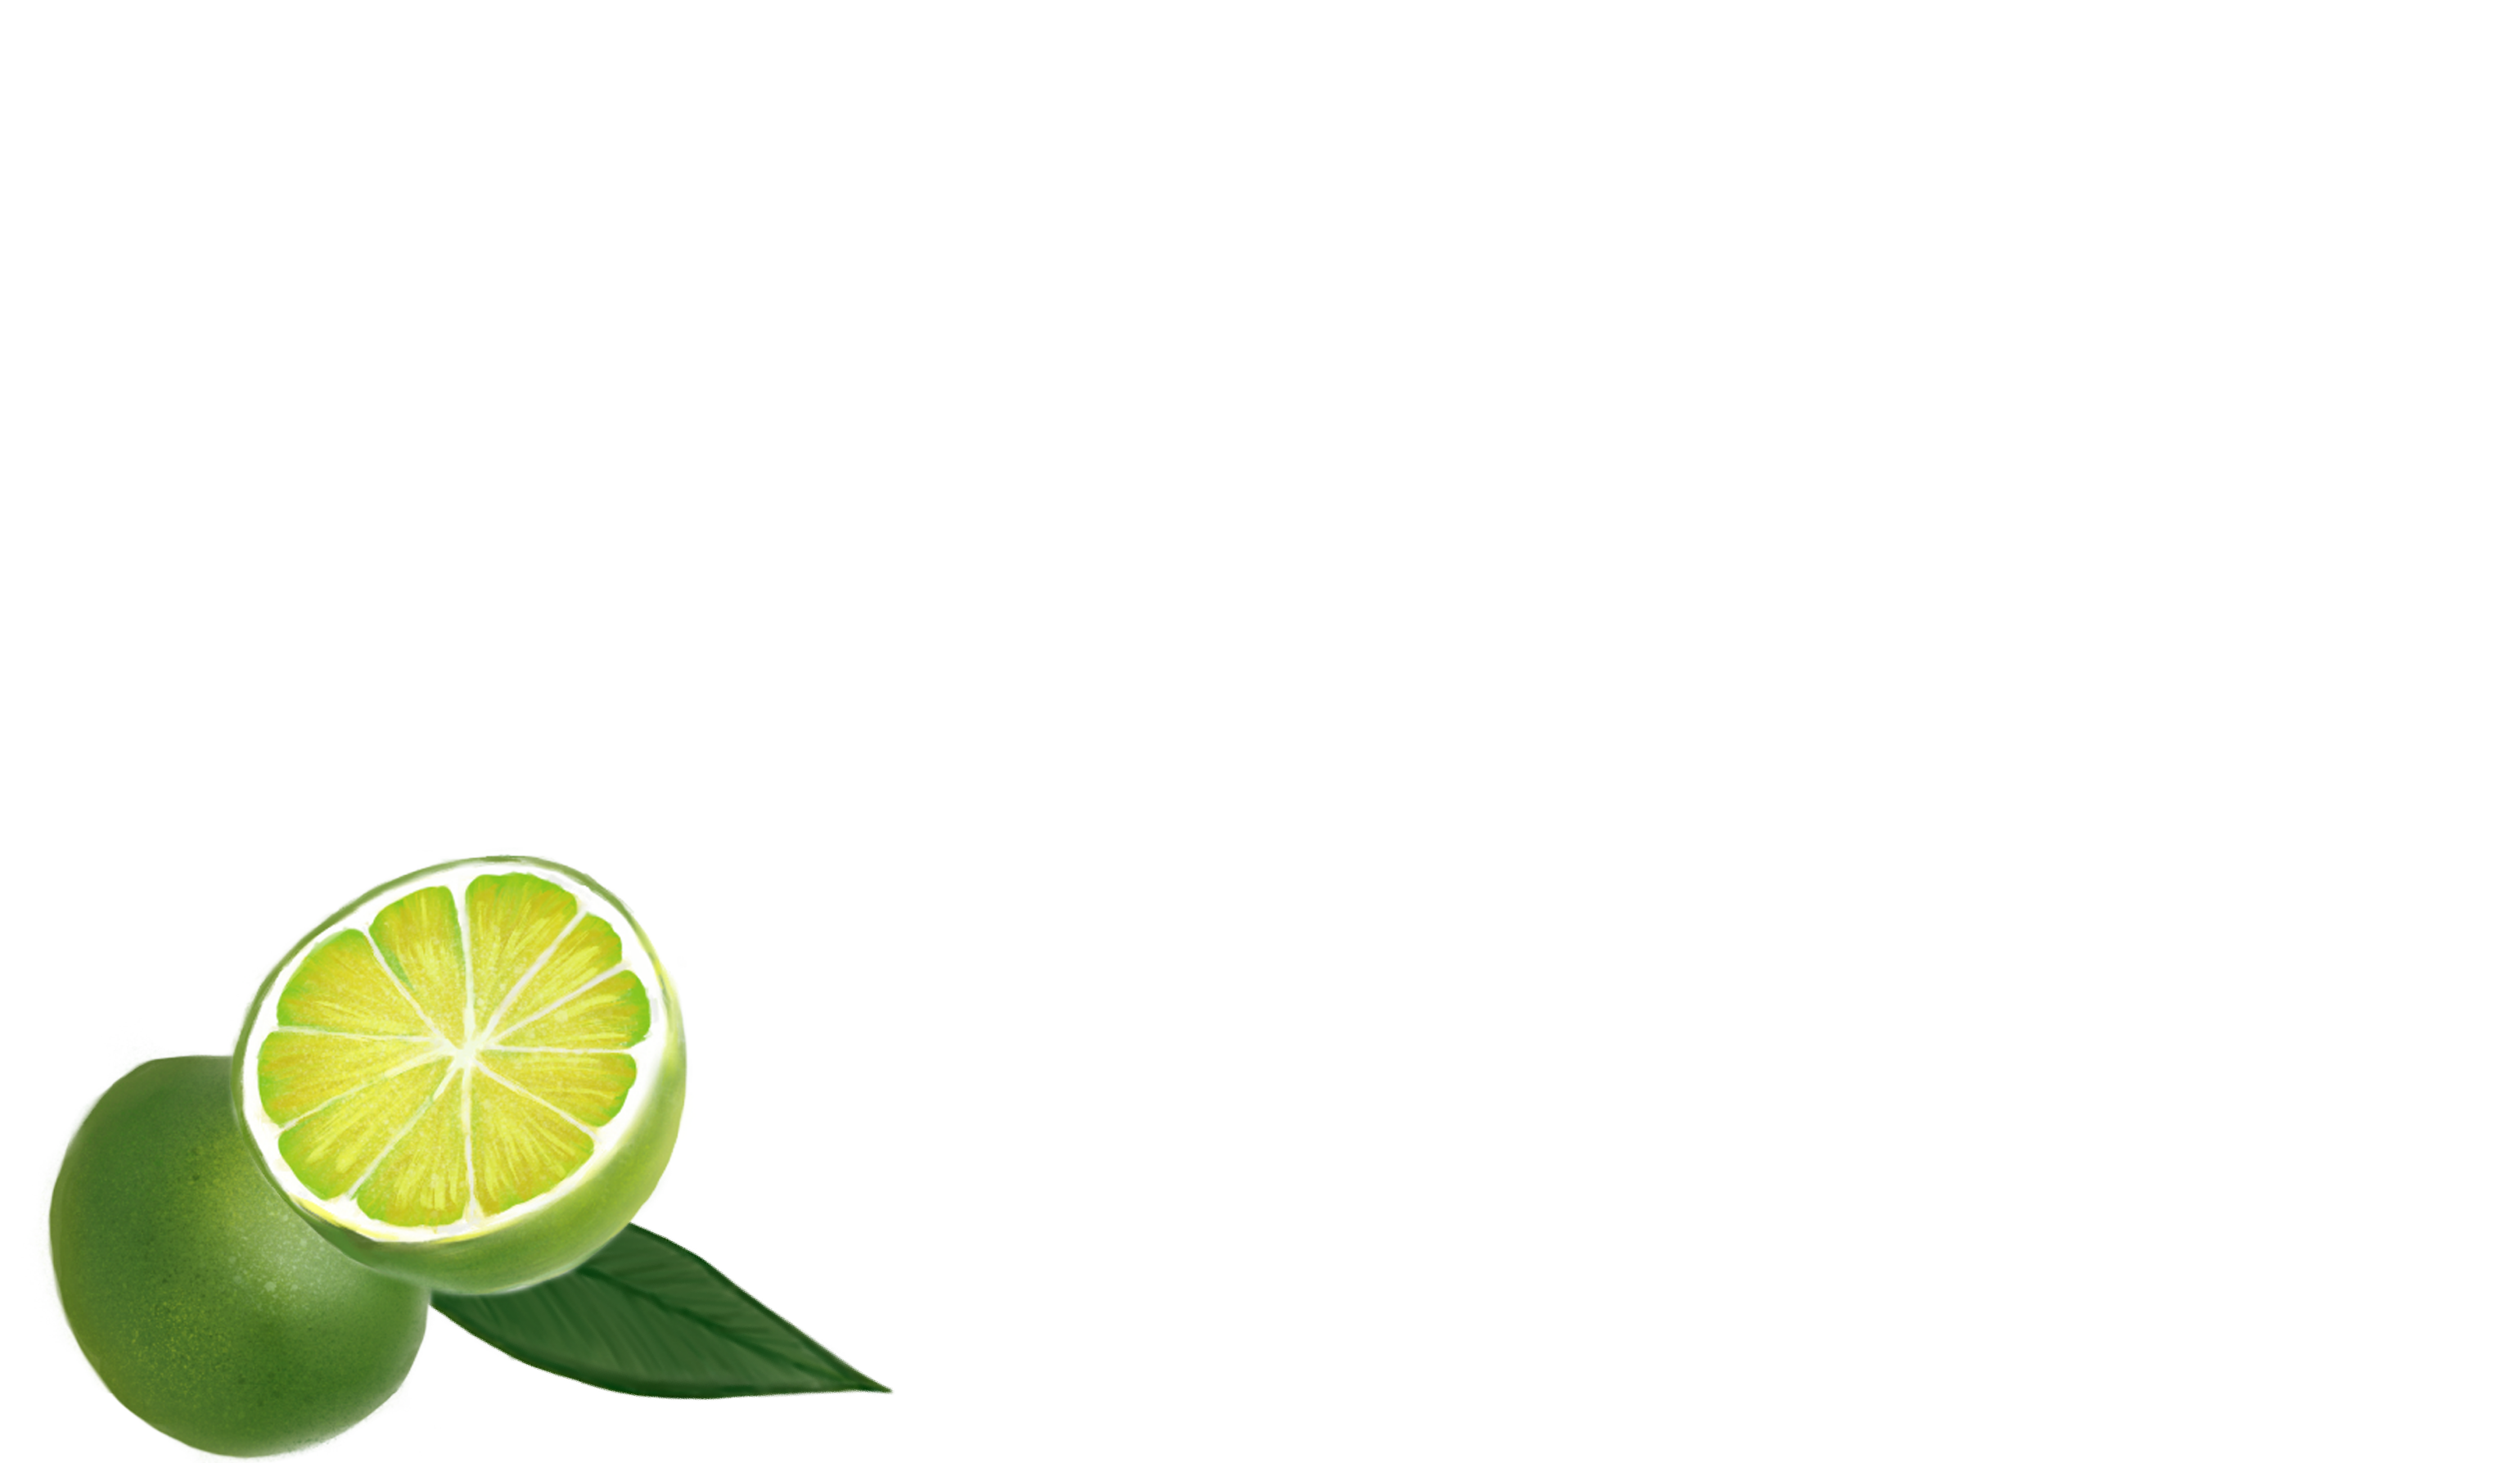 Key West Key Lime Pie Company Award Winning Key Lime Pie